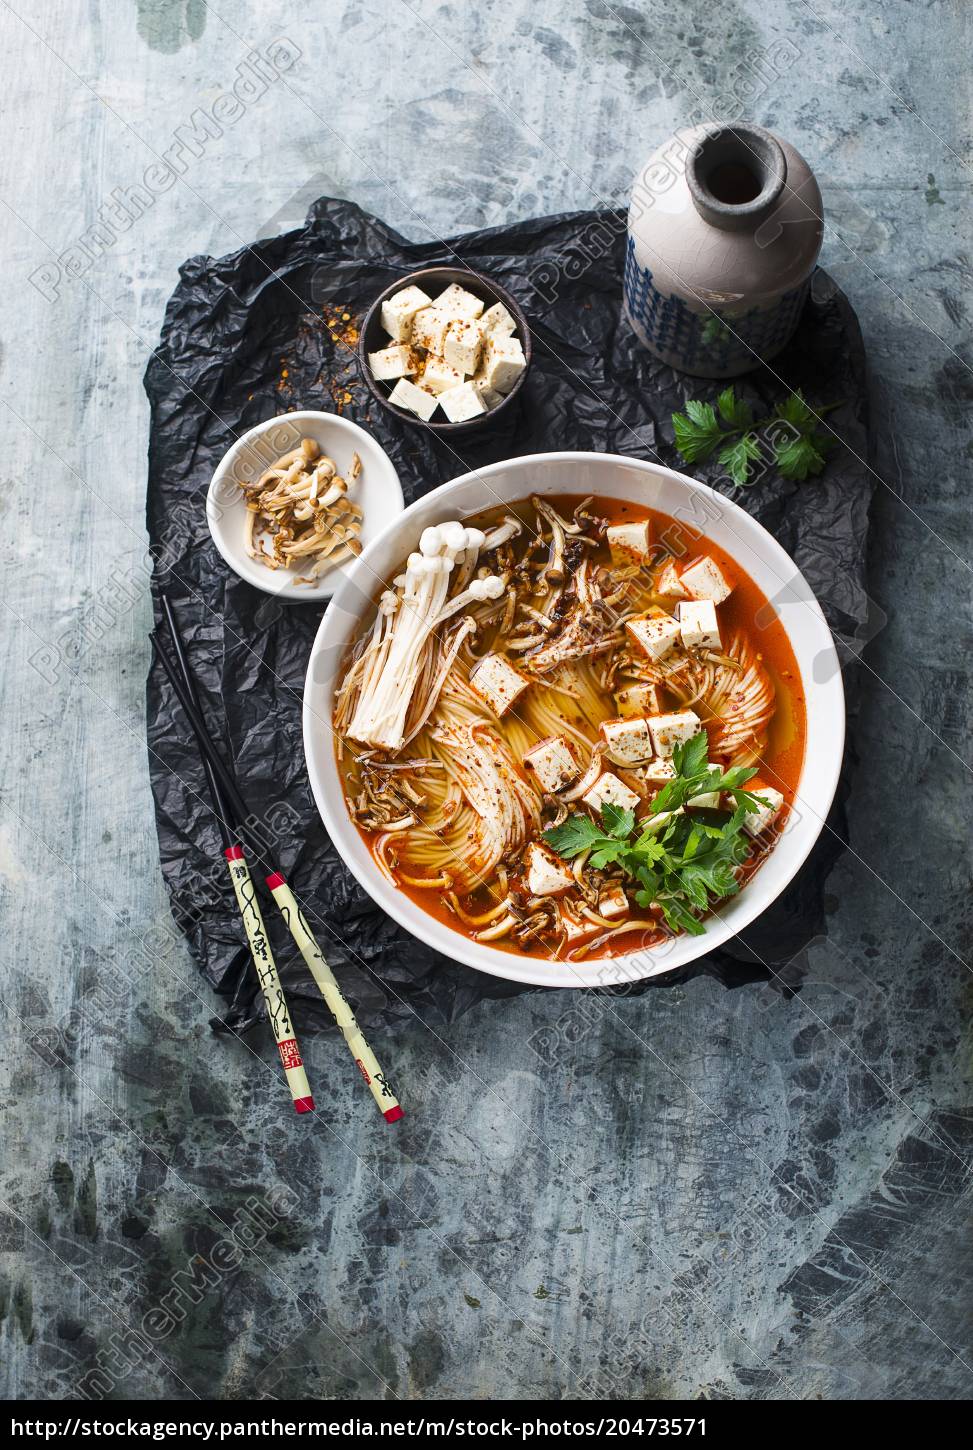 Asiatische Suppe mit Nudeln und Tofu vegan - Lizenzfreies Bild ...